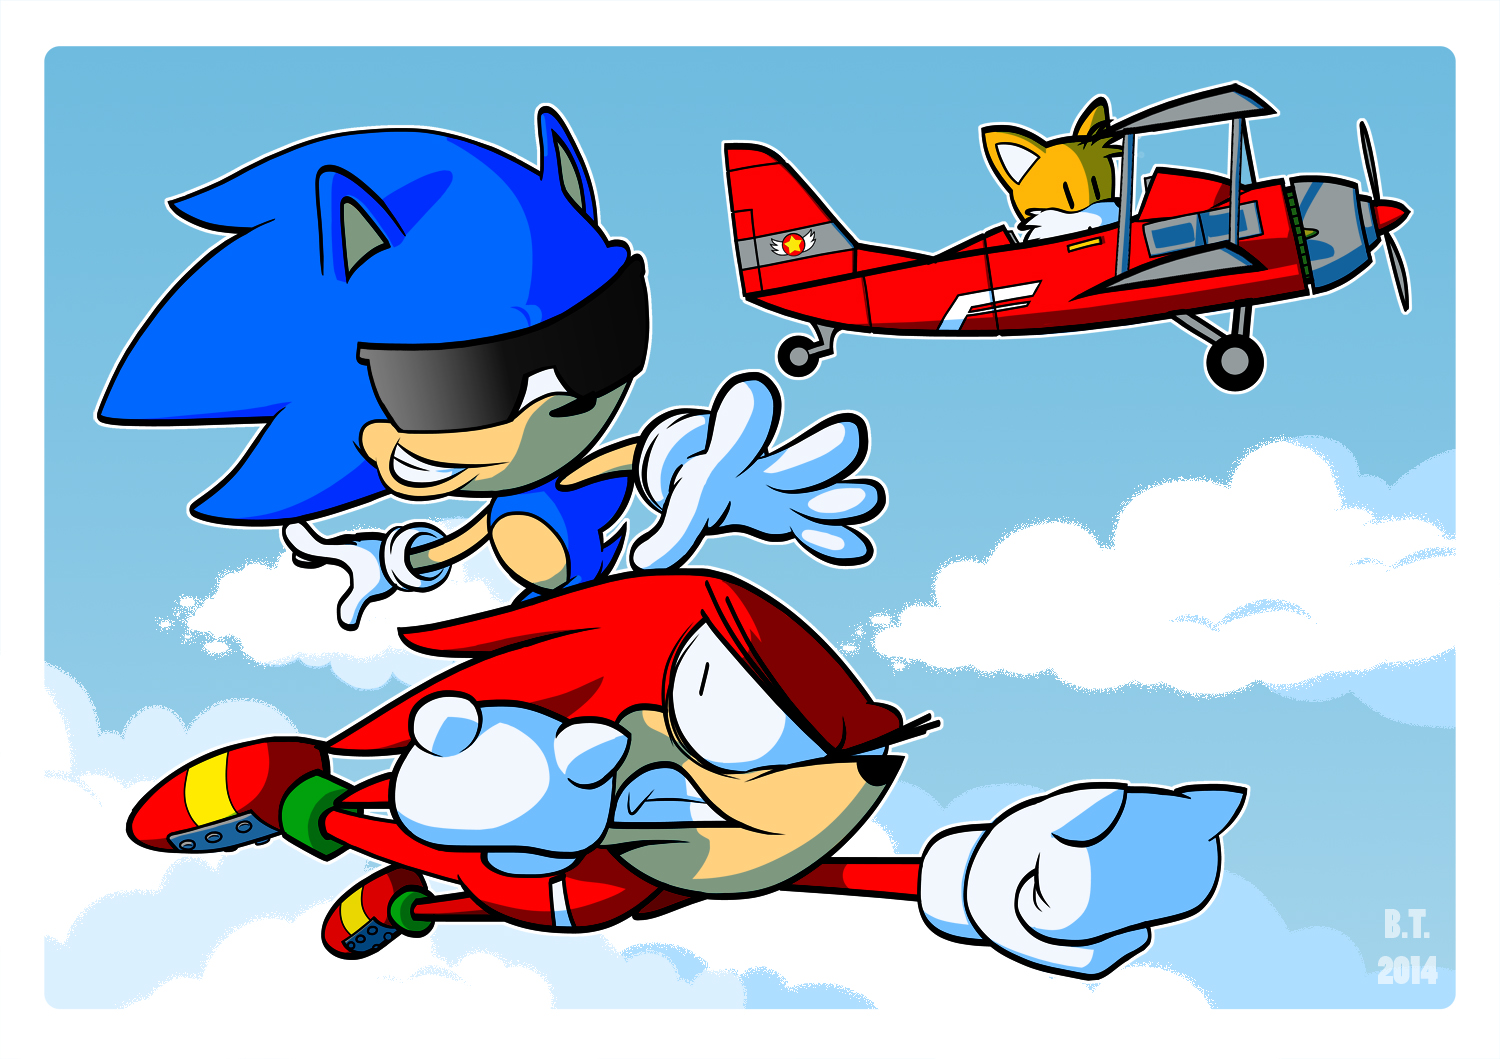 Sonic the Hedgehog 3 Wallpaper by BThomas64